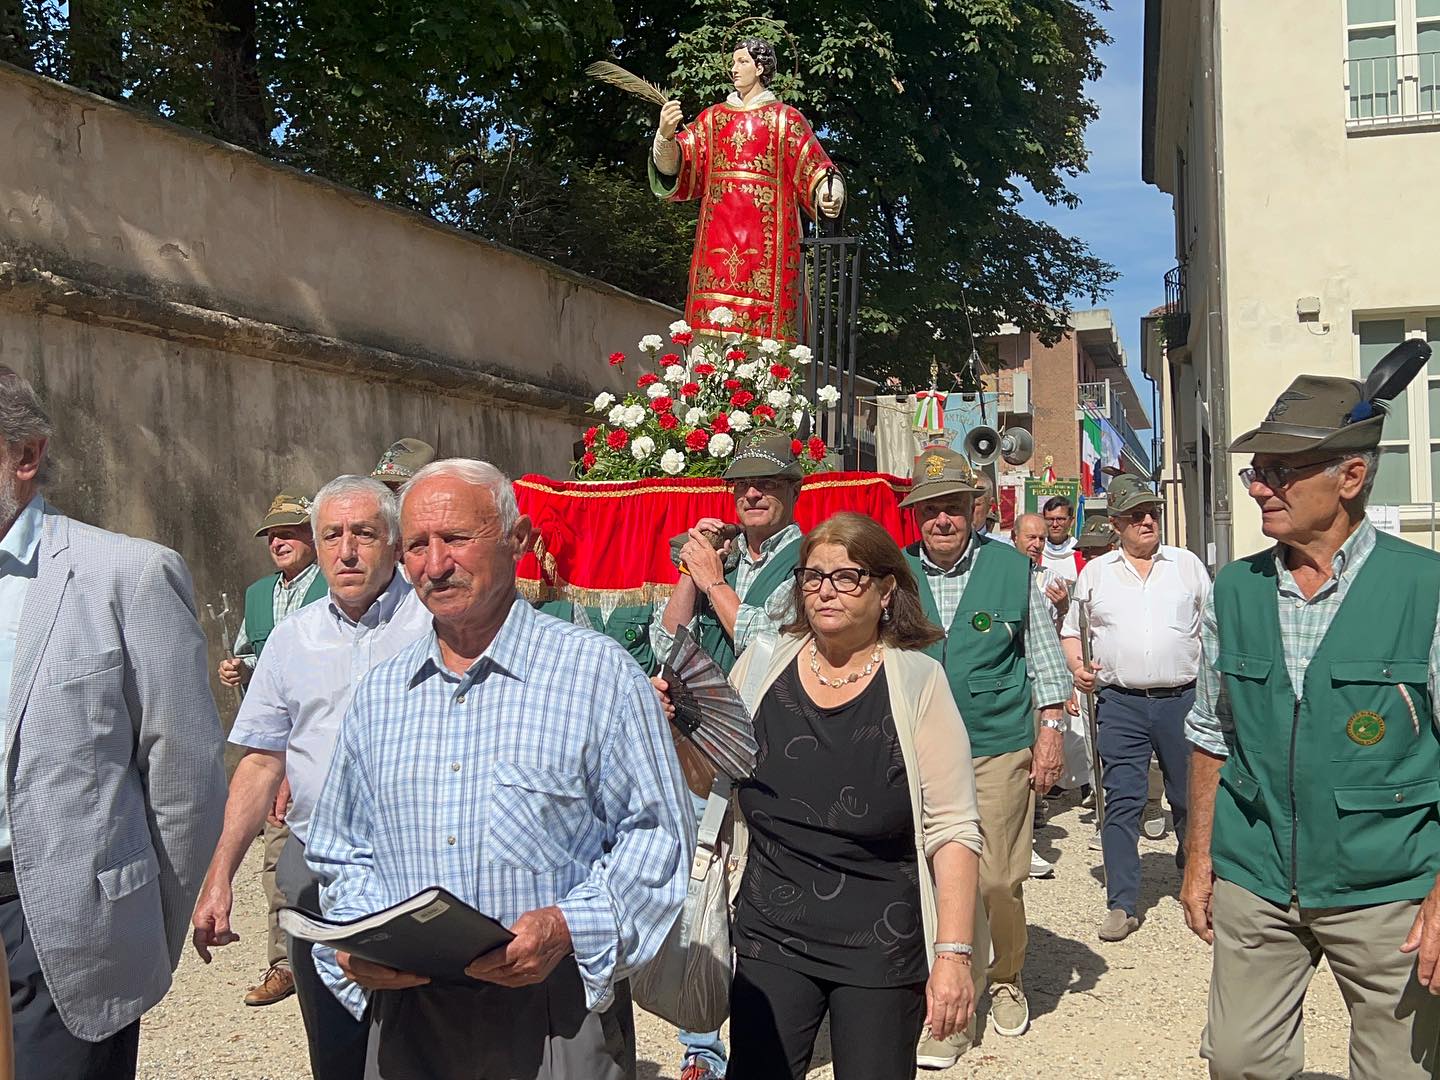 SANTENA – La patronale di San Lorenzo con la processione